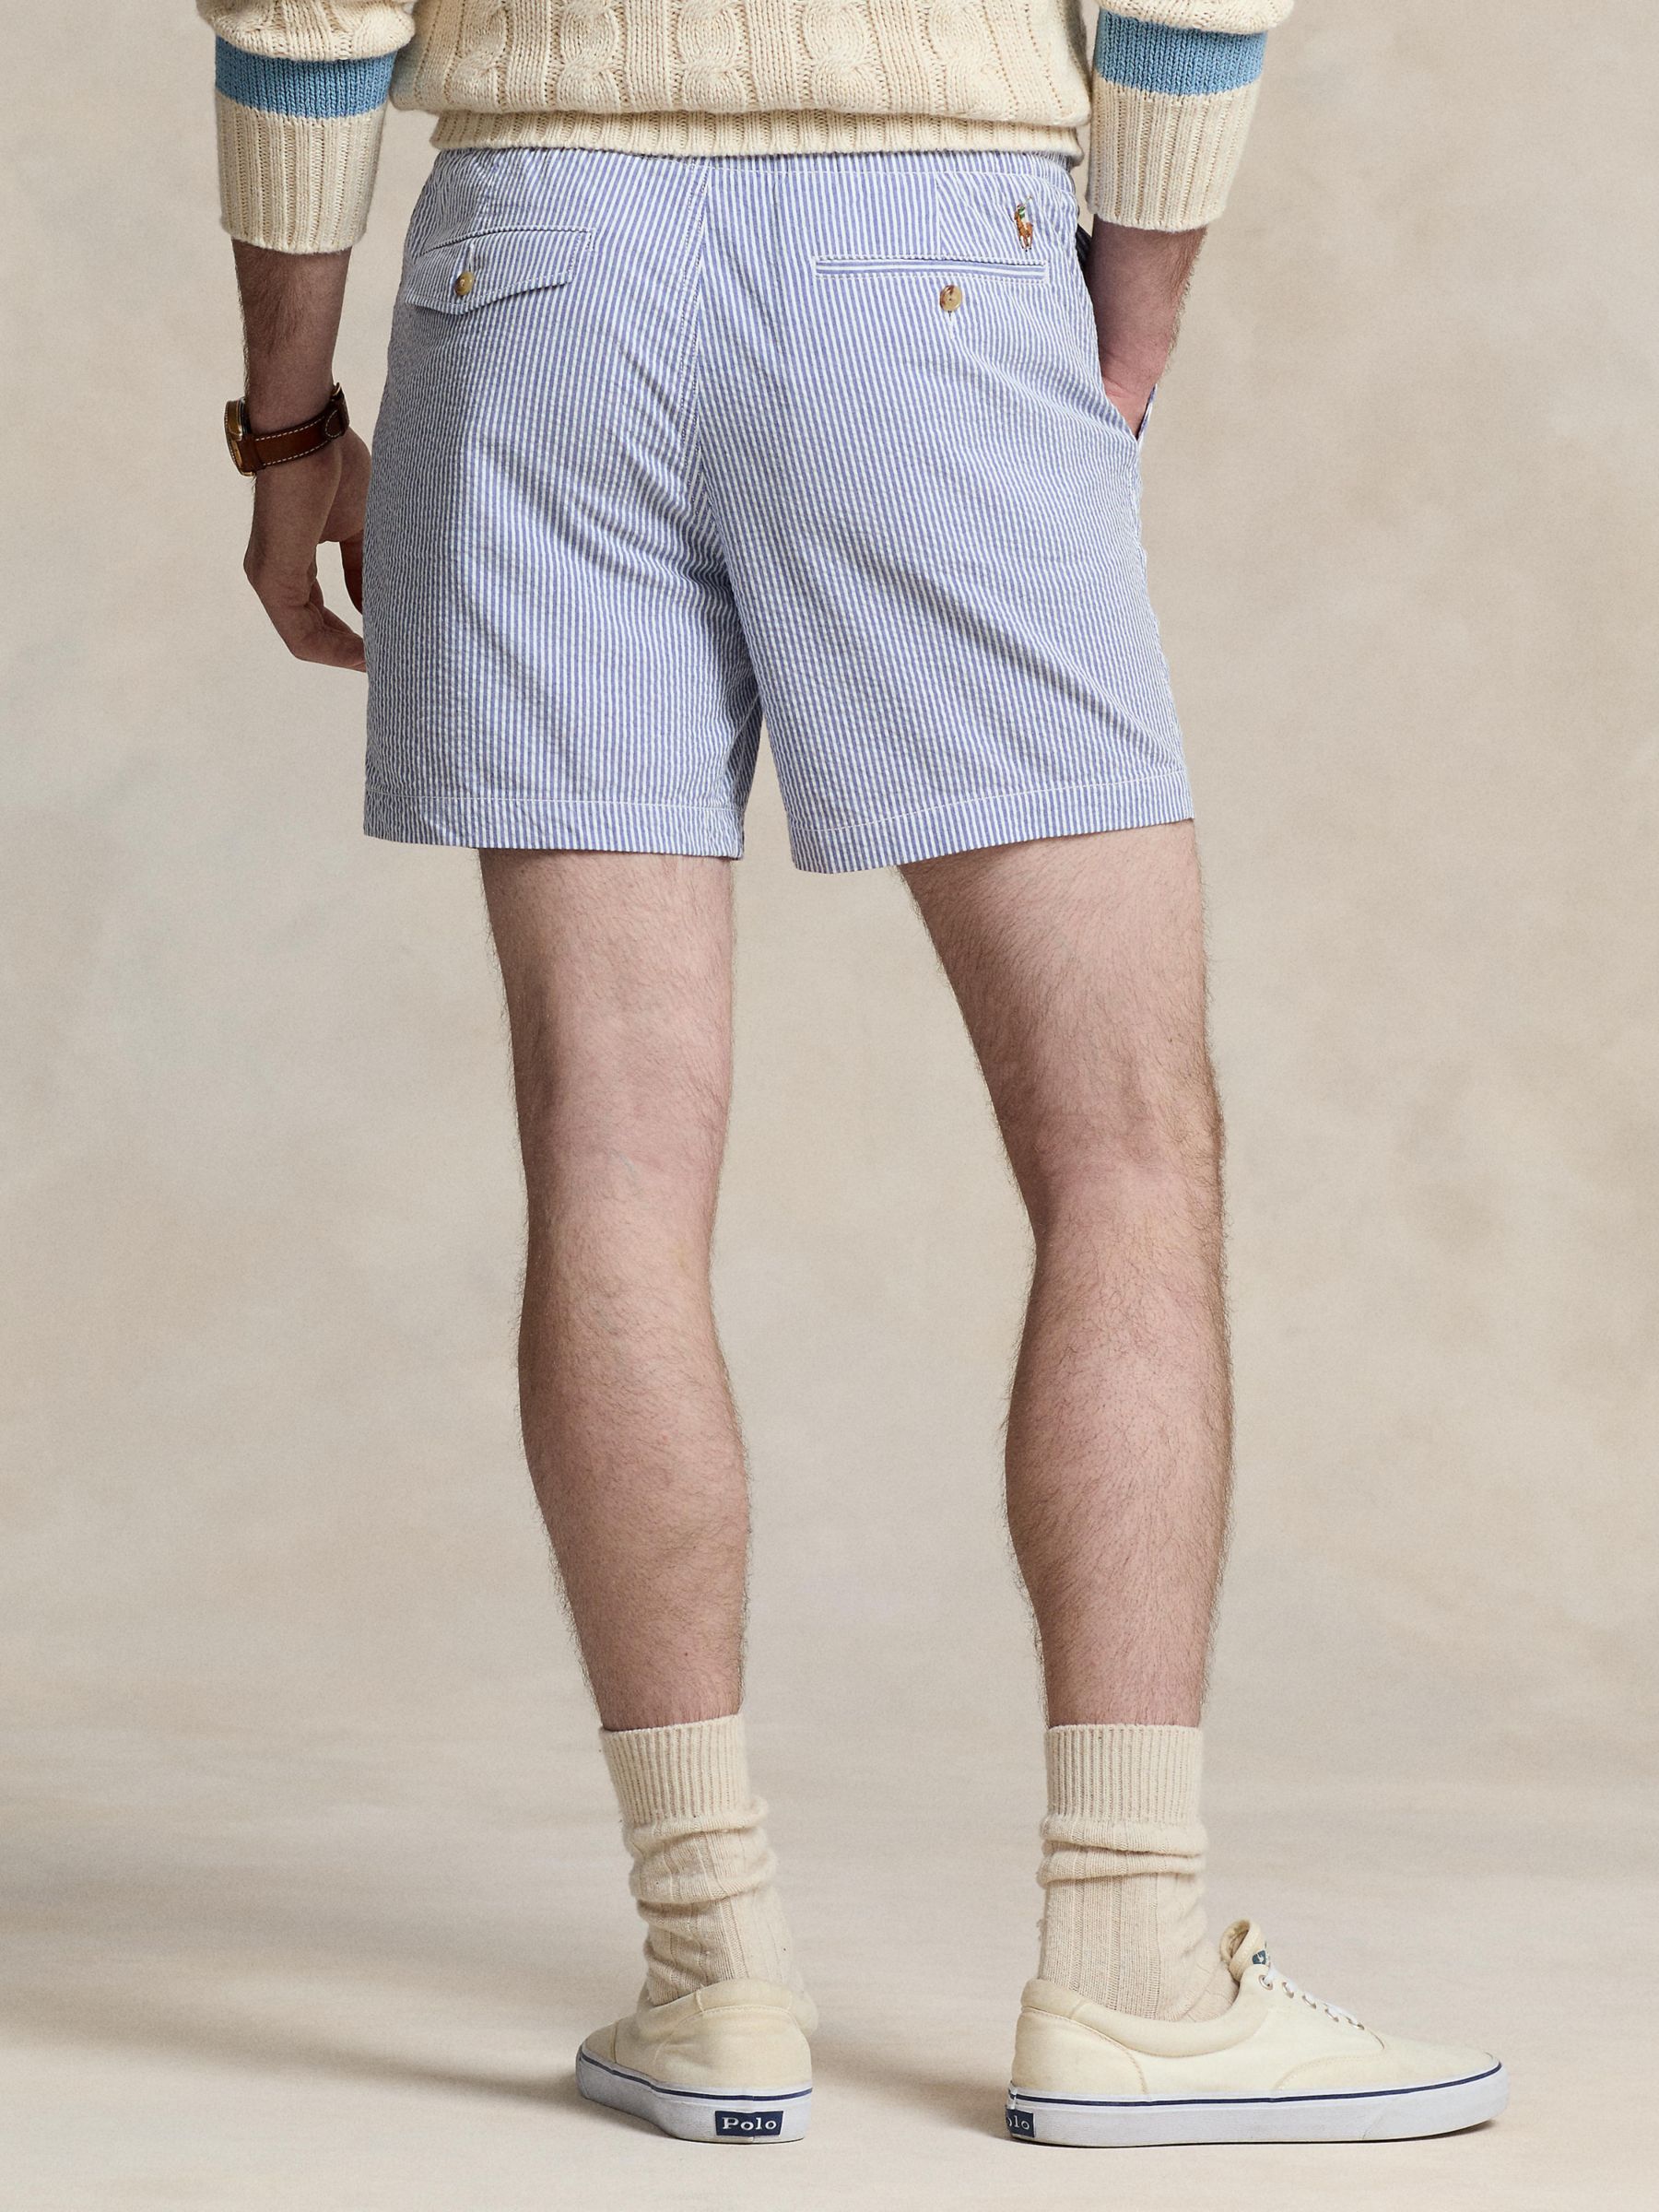 Polo Ralph Lauren Prepster Seersucker 6" Shorts, Blue, S